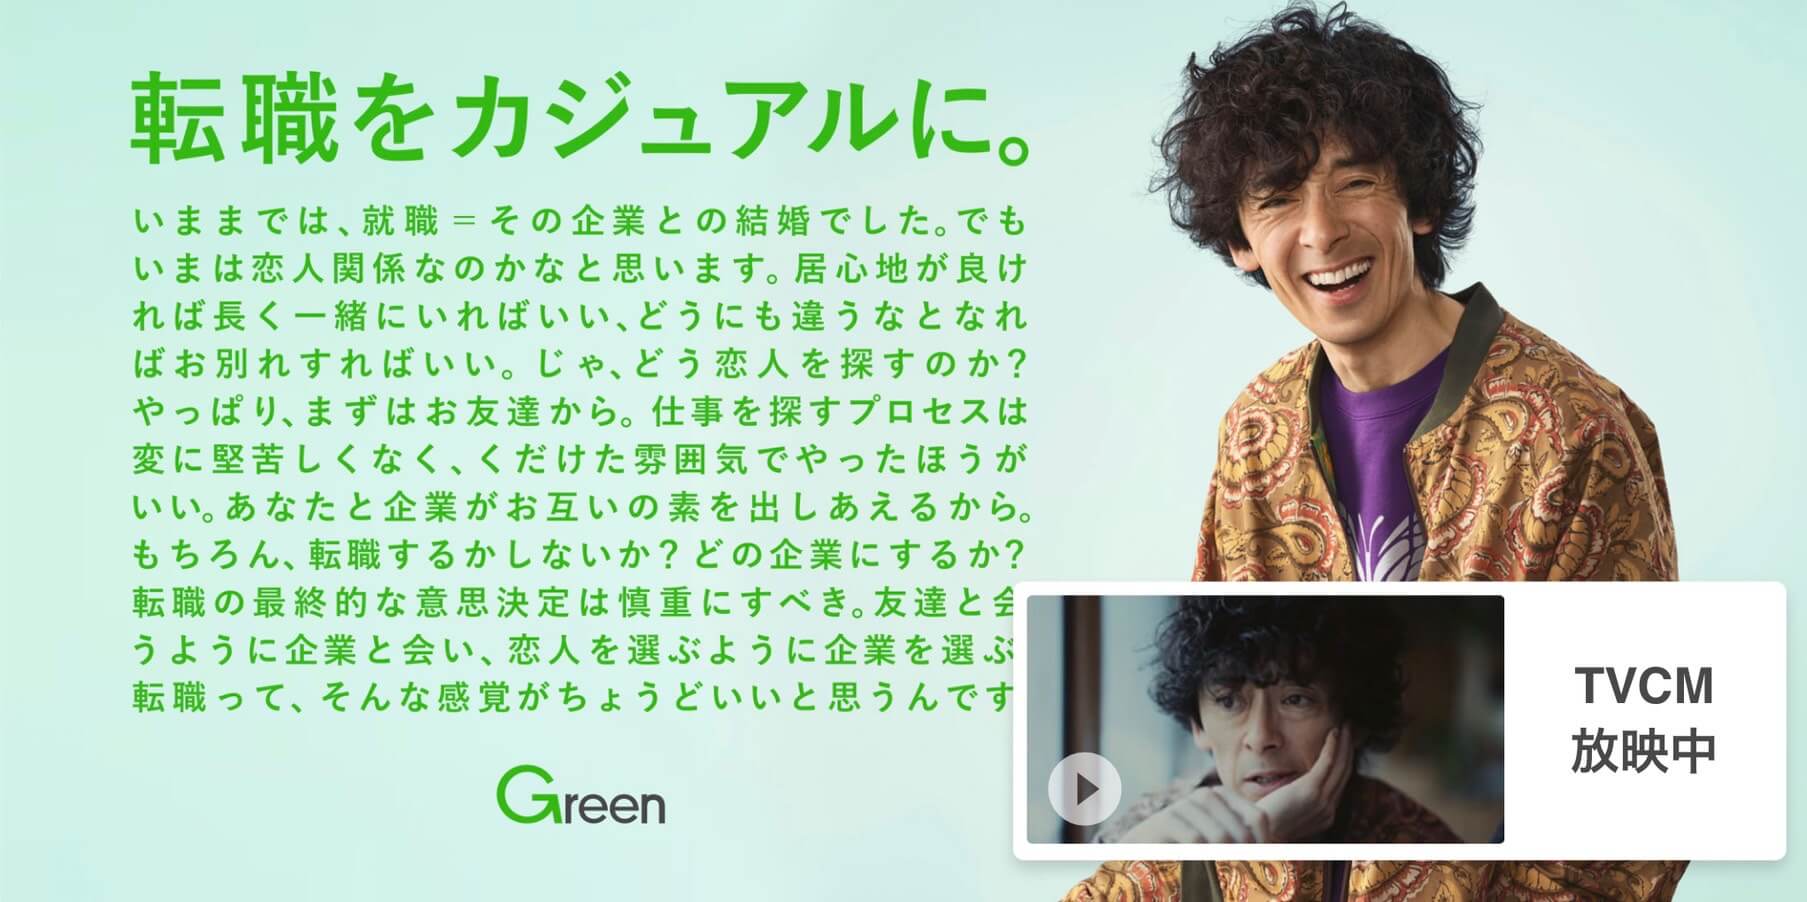 転職サイト_ベンチャー_おすすめ_Green